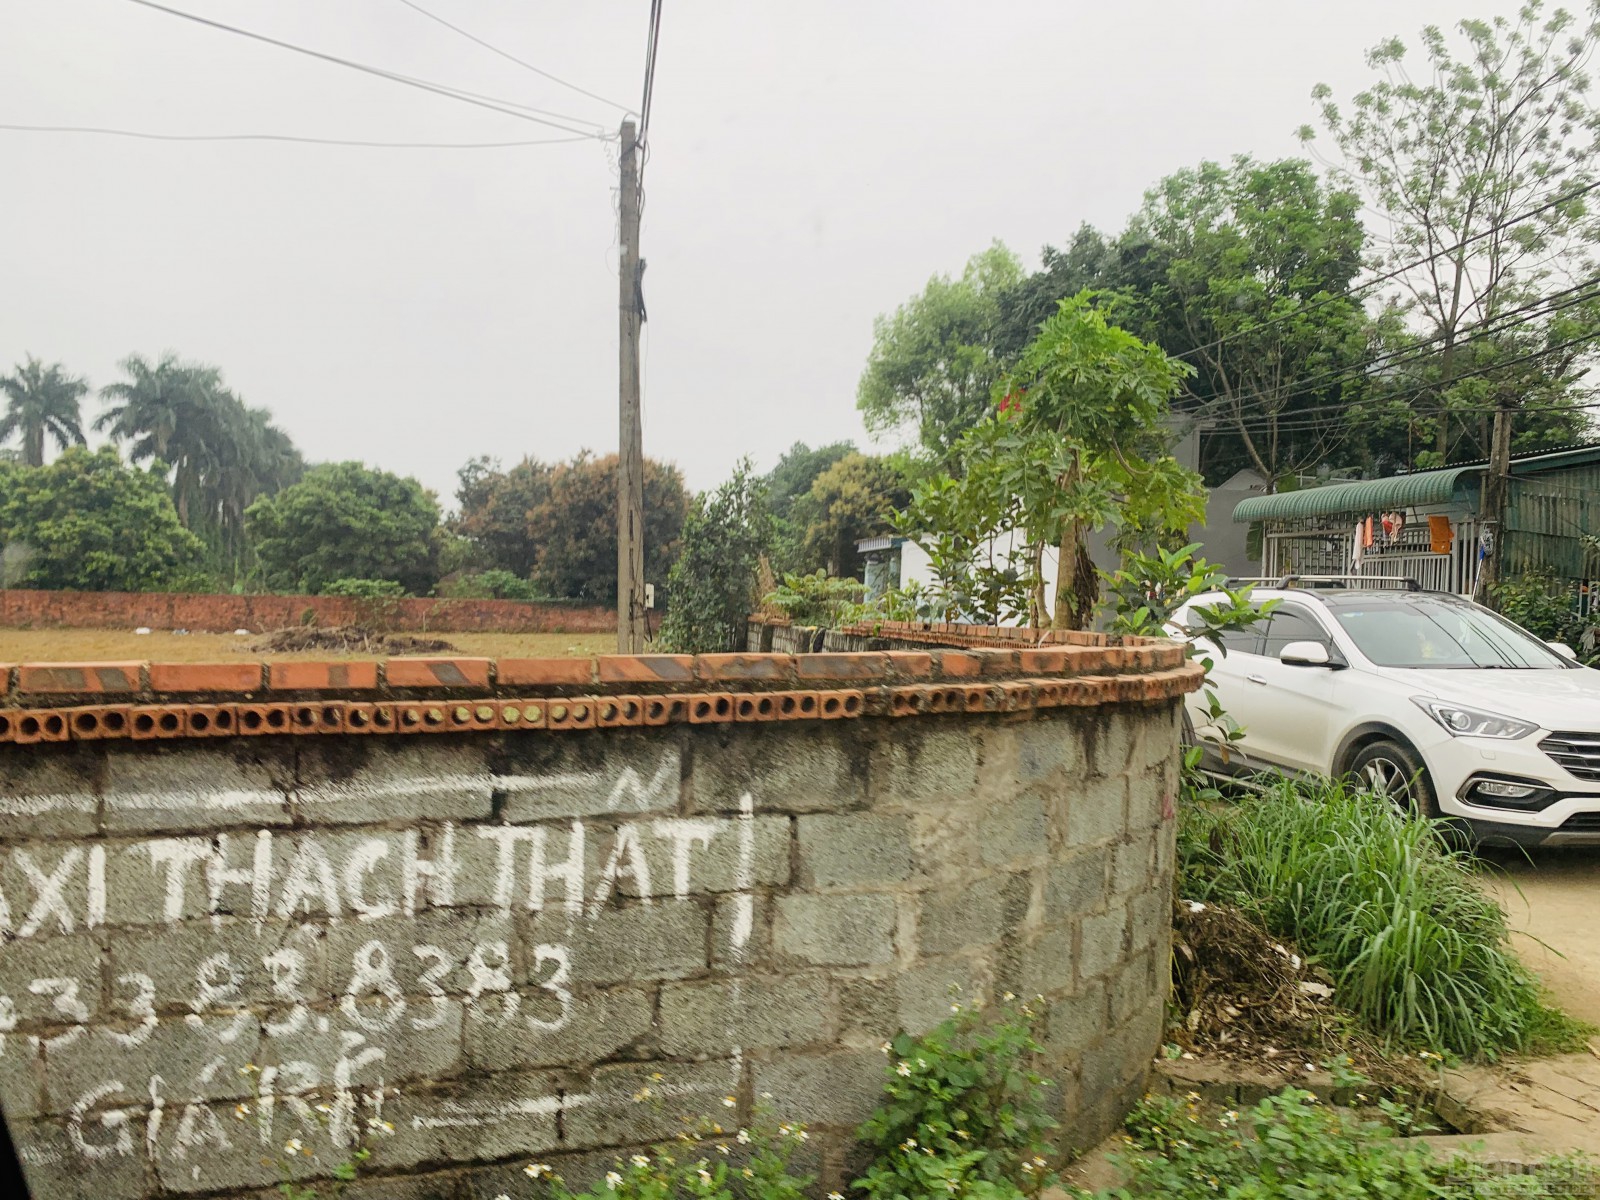 Ăn theo thông tin có đại dự án của tập đoàn lớn, bất động sản huyện Thạch Thất, Hà Nội đột nhiên lên cơn sốt gần đây